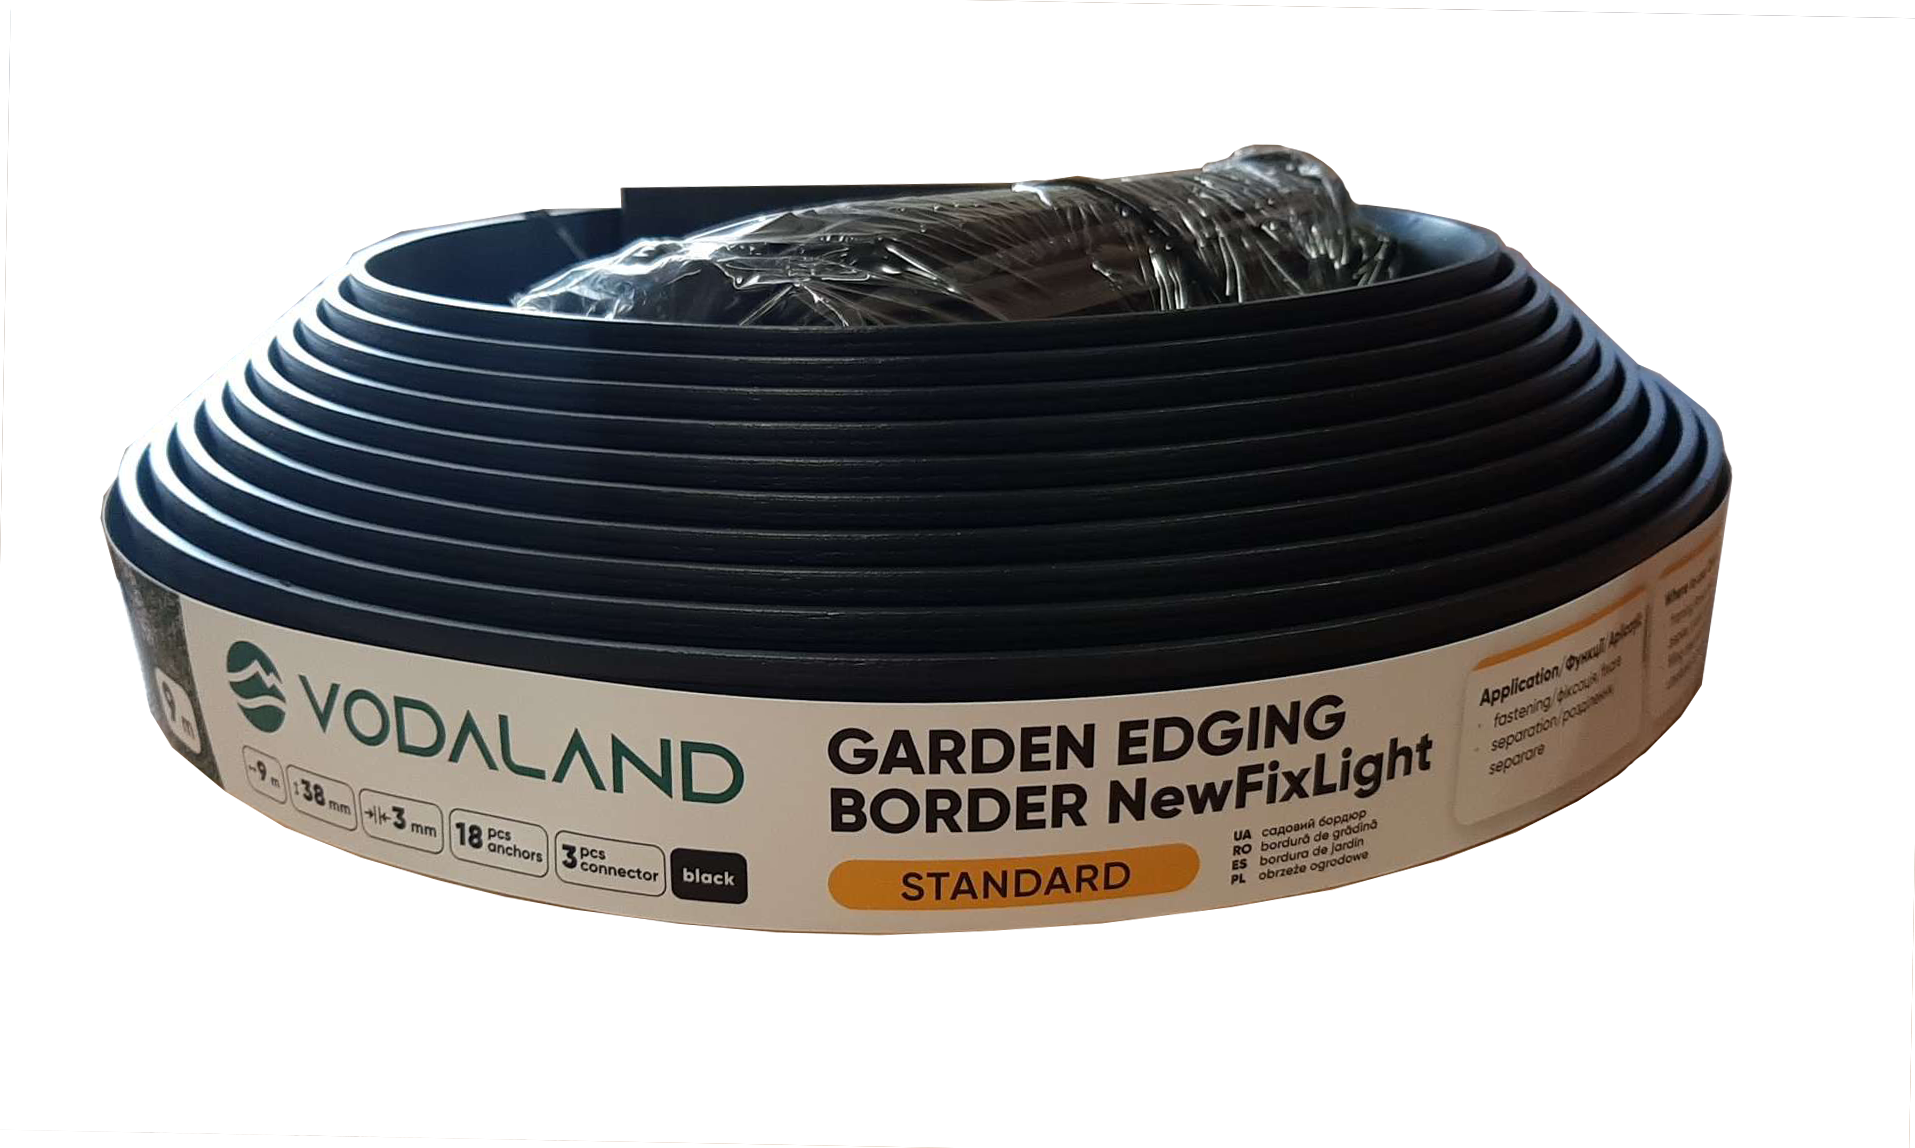 Бордюр садовий Vodaland NewFixLight в упаковці з анкерами та з'єднувачами 18 шт/3 шт. (8290404.18-BK)